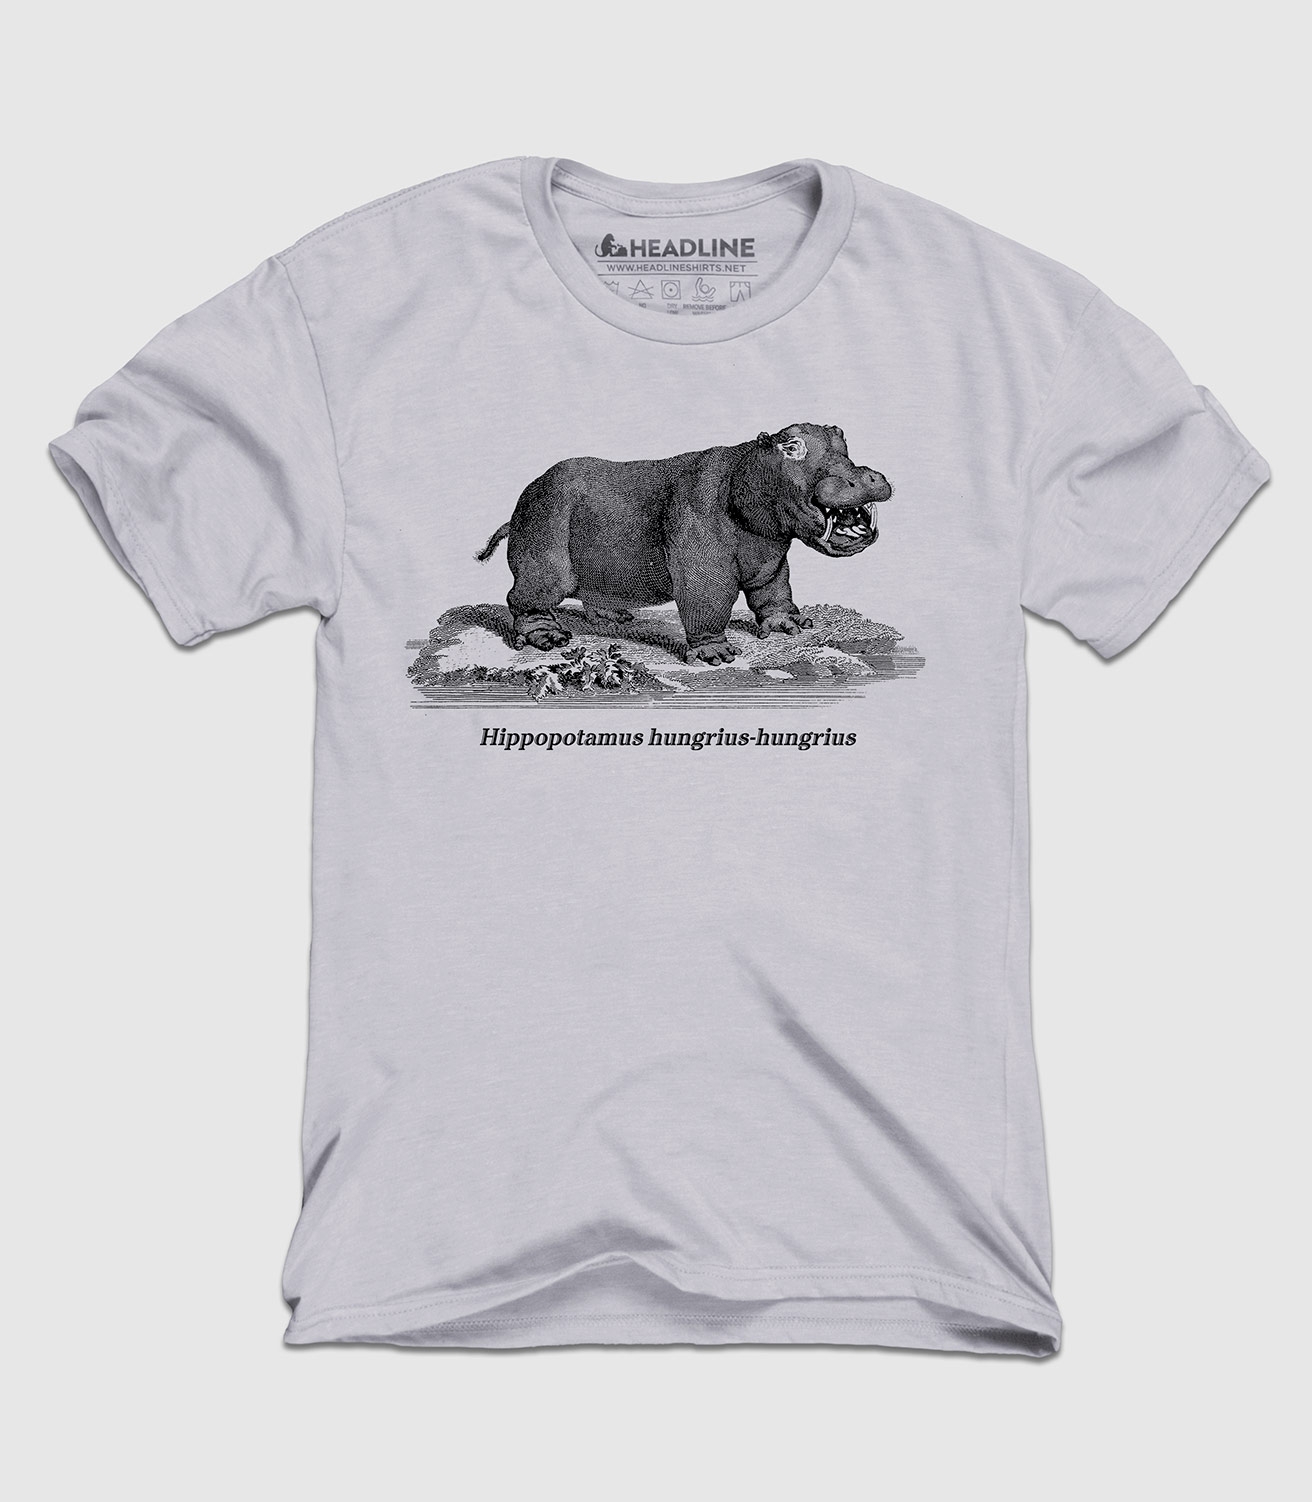 Hippopotamus hungrius-hungrius Unisex 100% Cotton T-Shirt